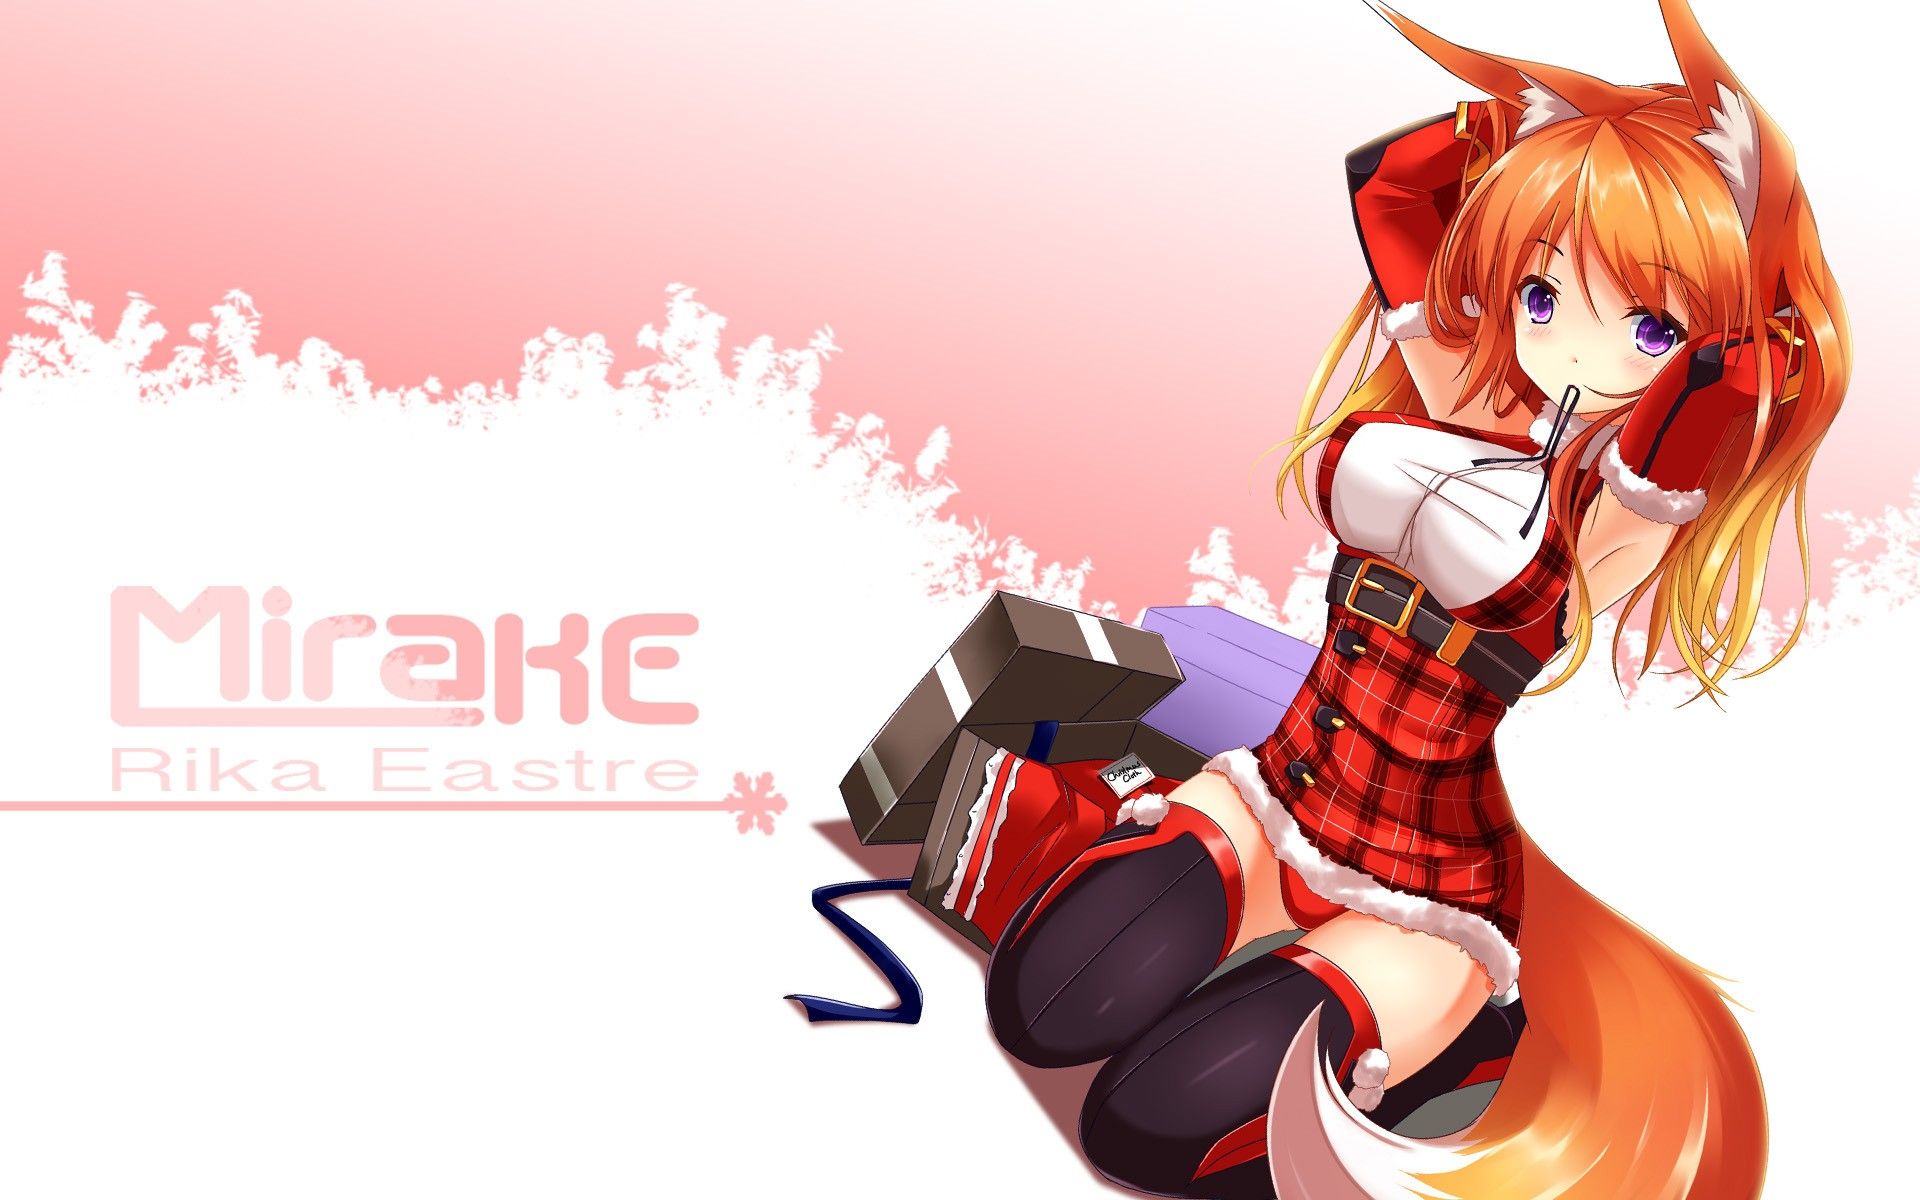 Materi Pelajaran 6: Anime Fox Cute Girl